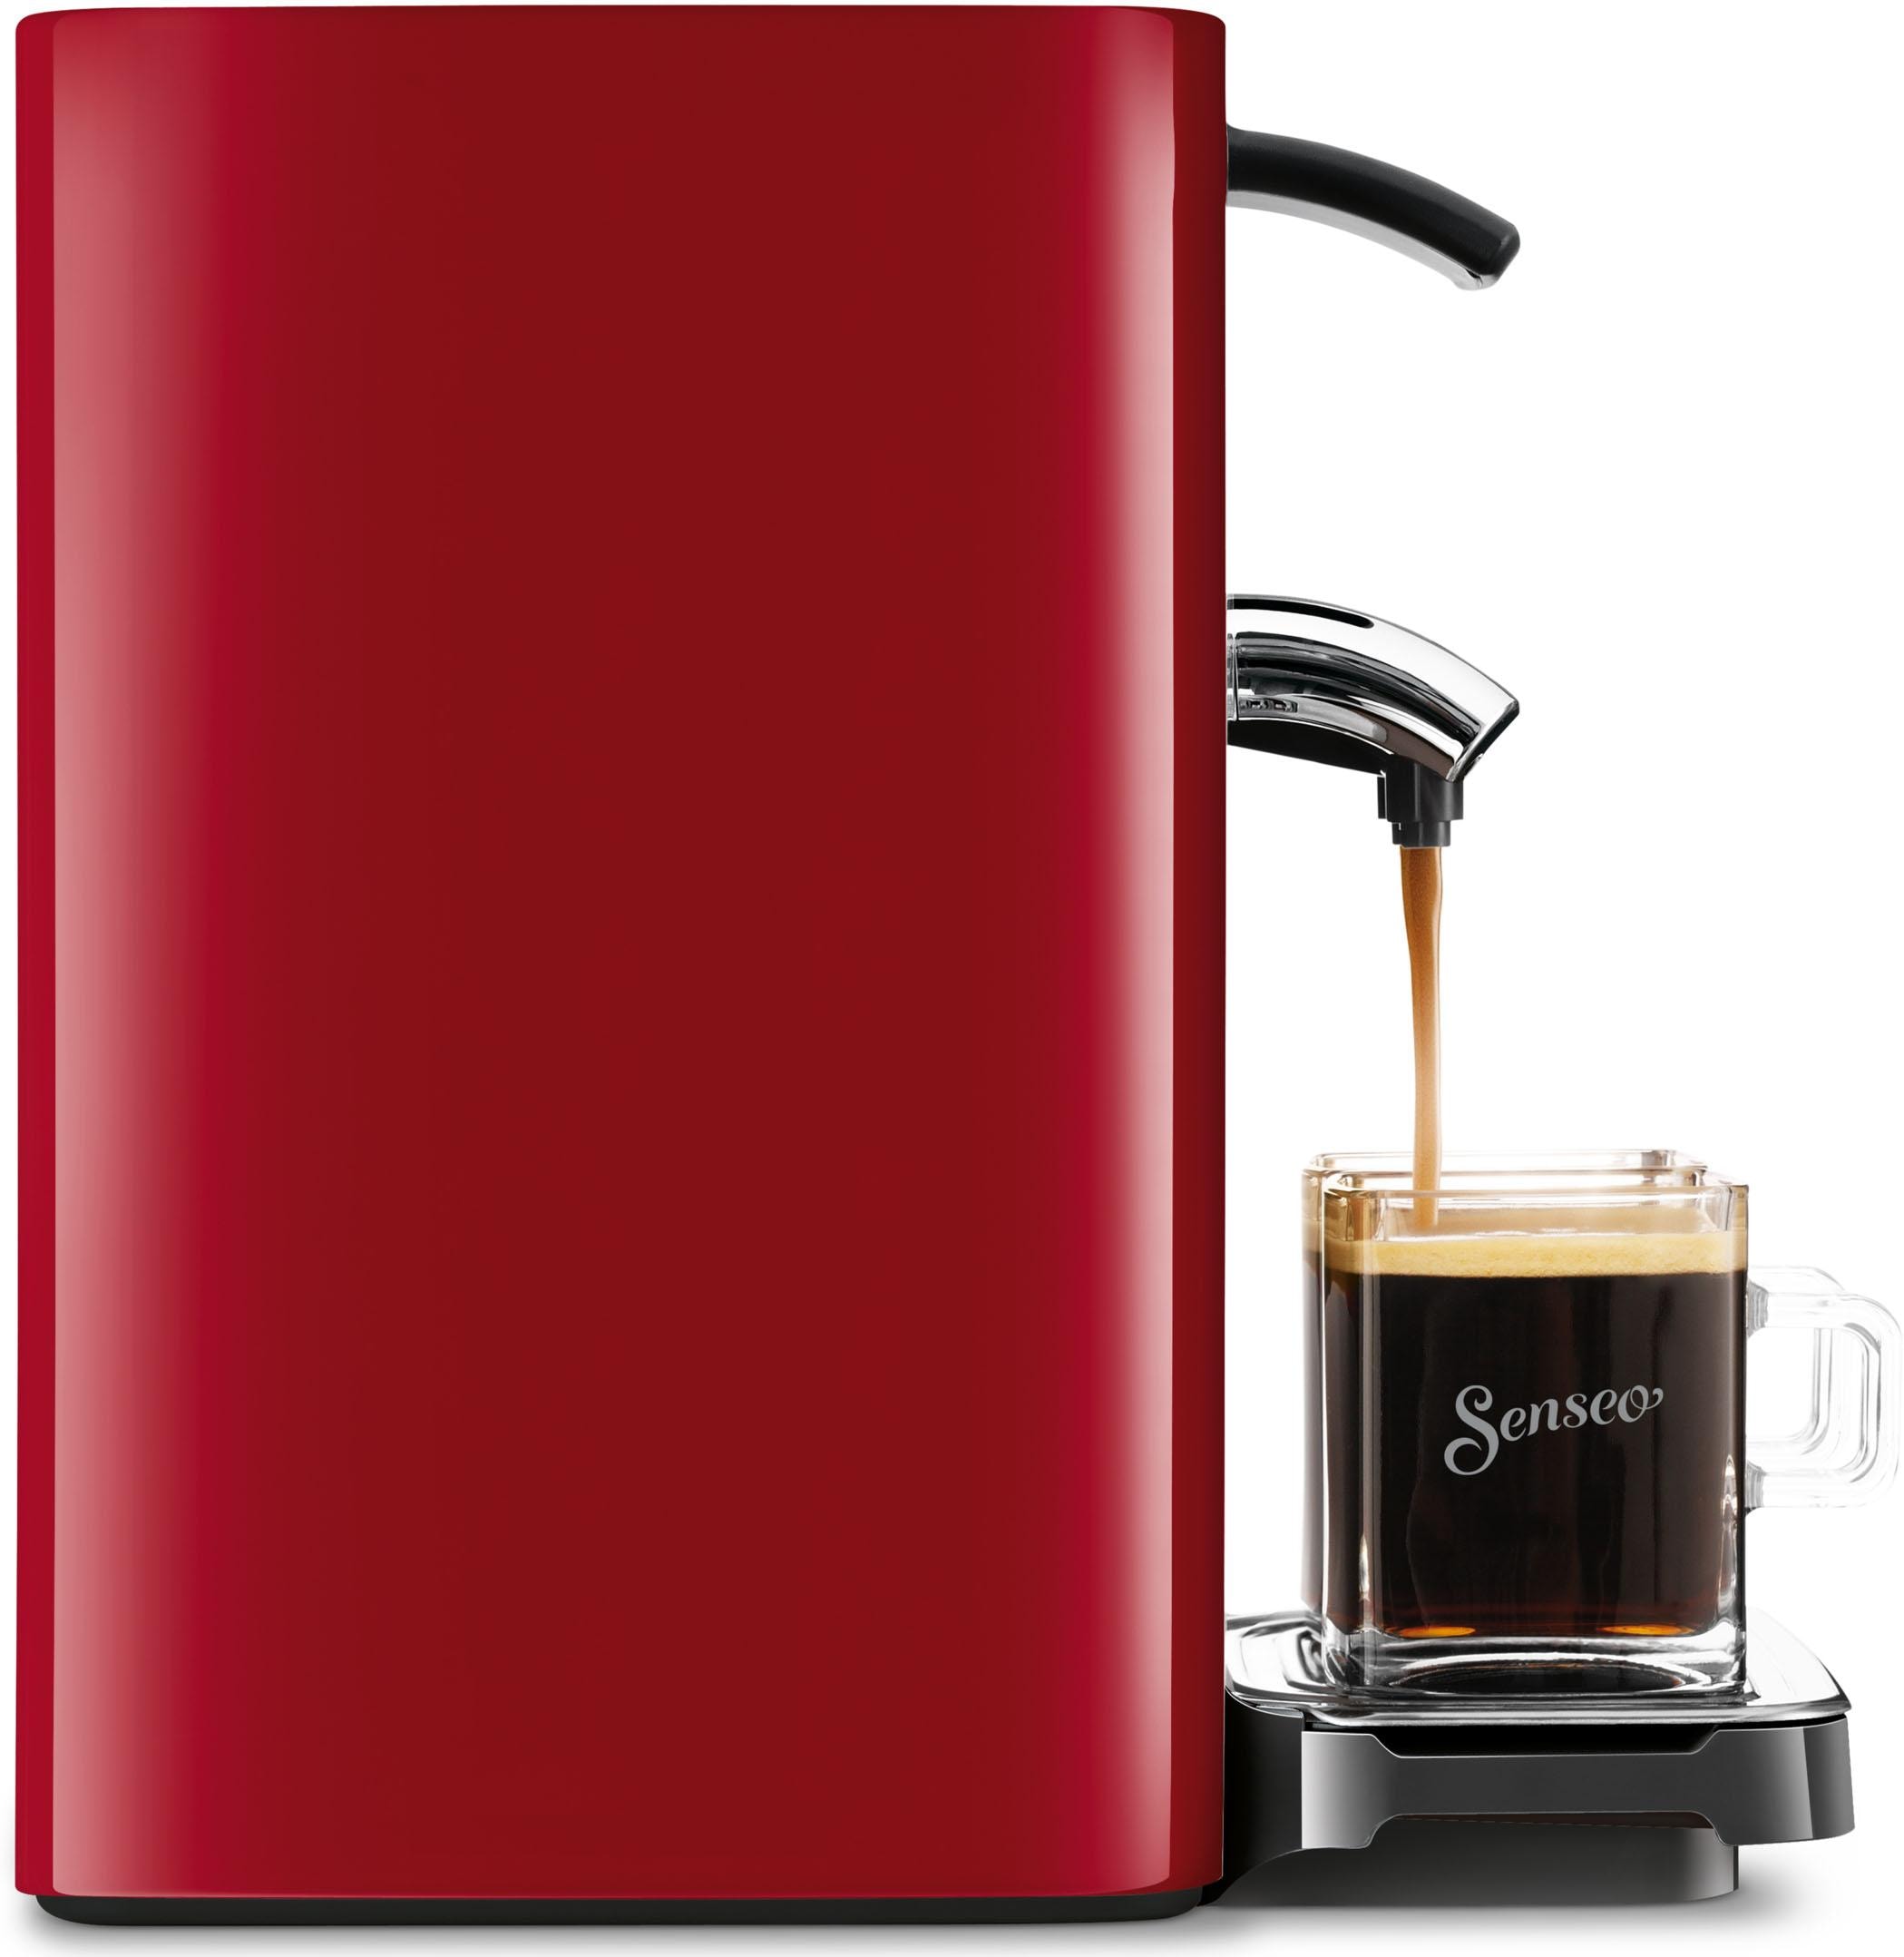 Philips Senseo | Gratis-Zugaben BAUR Wert von inkl. Quadrante Kaffeepadmaschine »SENSEO® UVP 23,90 € im HD7865/80«